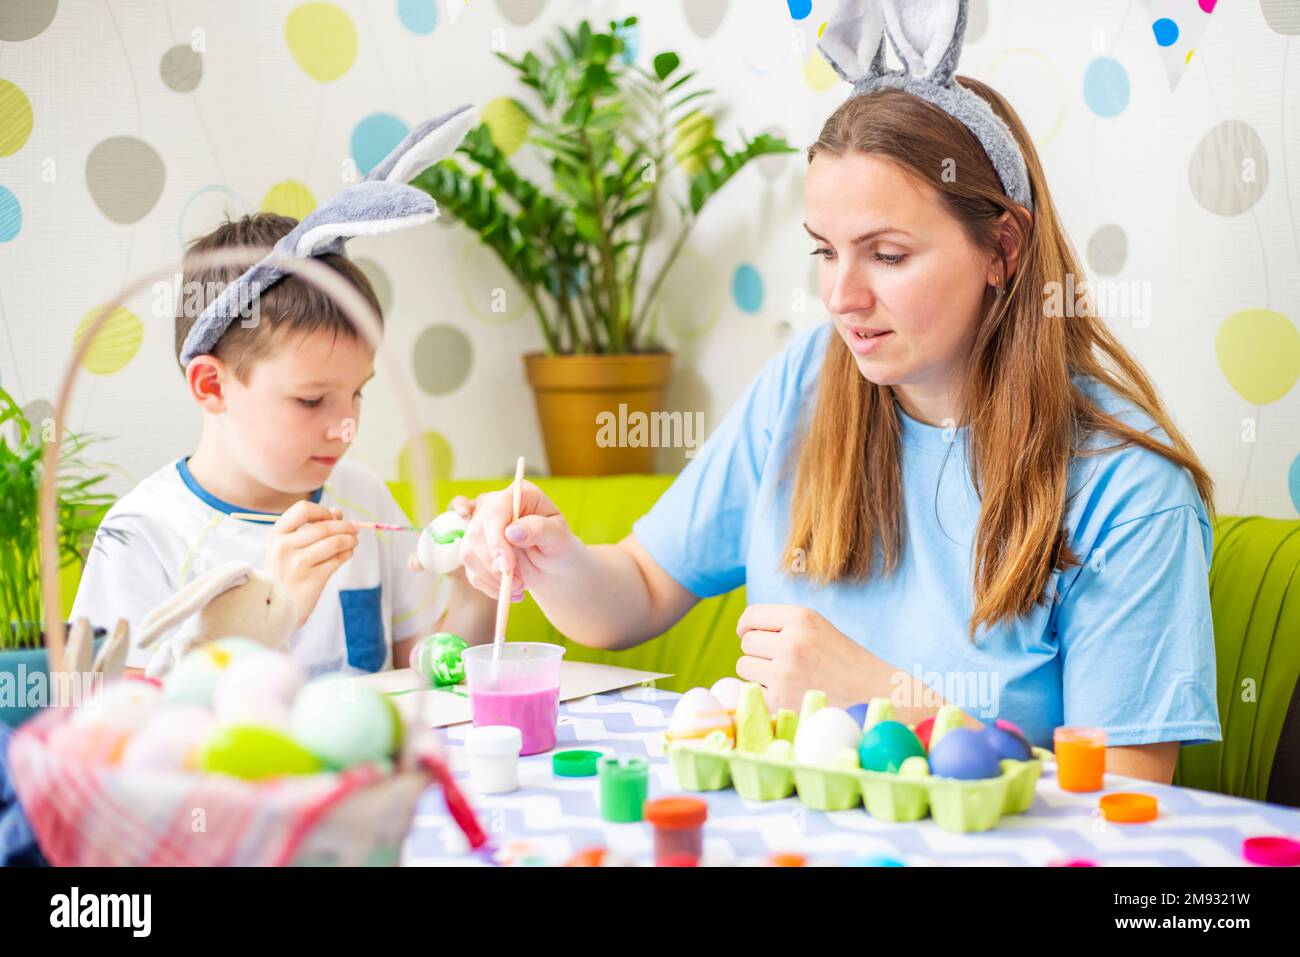 Joyeuses Pâques. Une mère et son fils peignent des œufs de Pâques Banque D'Images